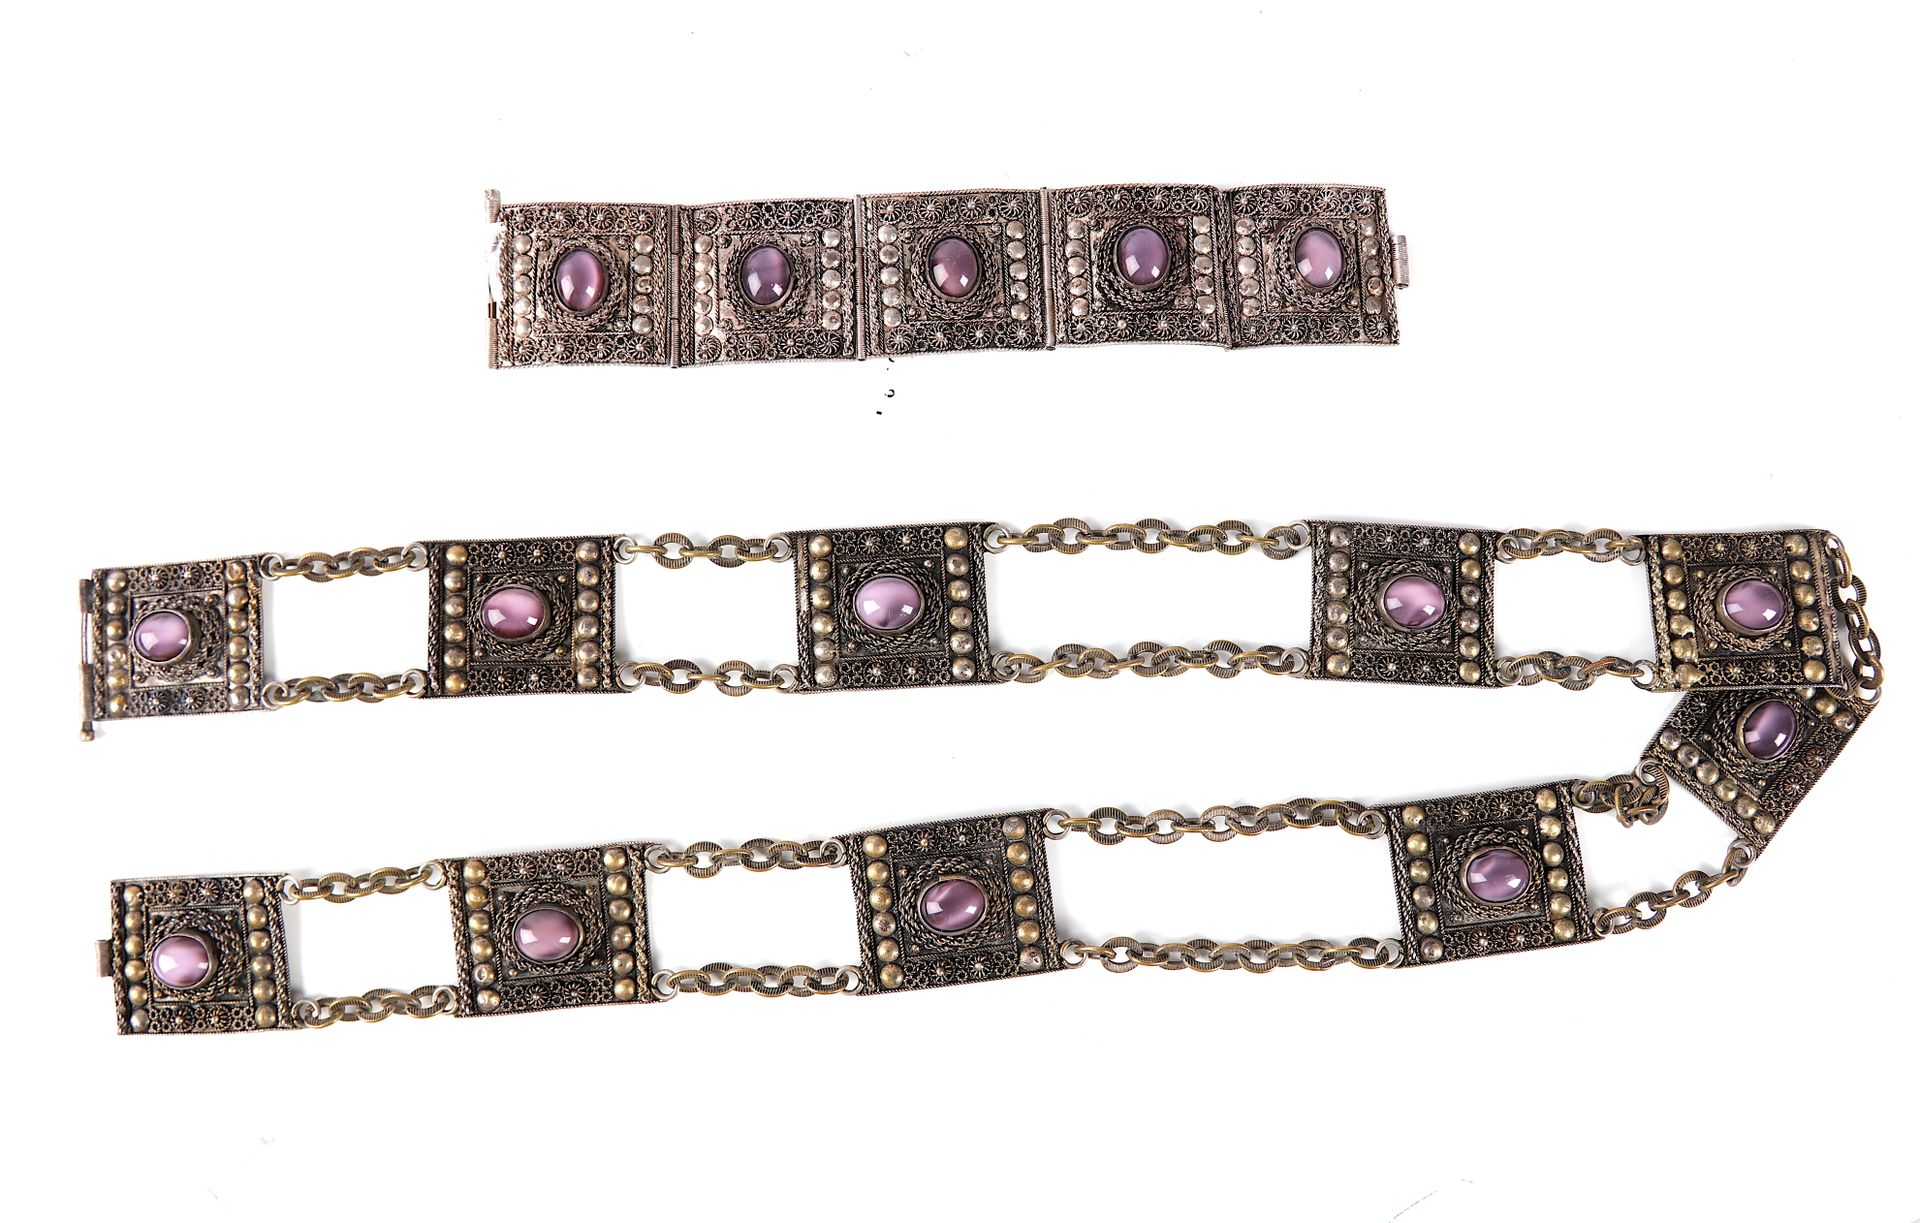 Null 由4个银质链节组成的铰接式手镯，上面装饰有凸圆形的紫色宝石。 重量：35克。附带一条皮带：110克。